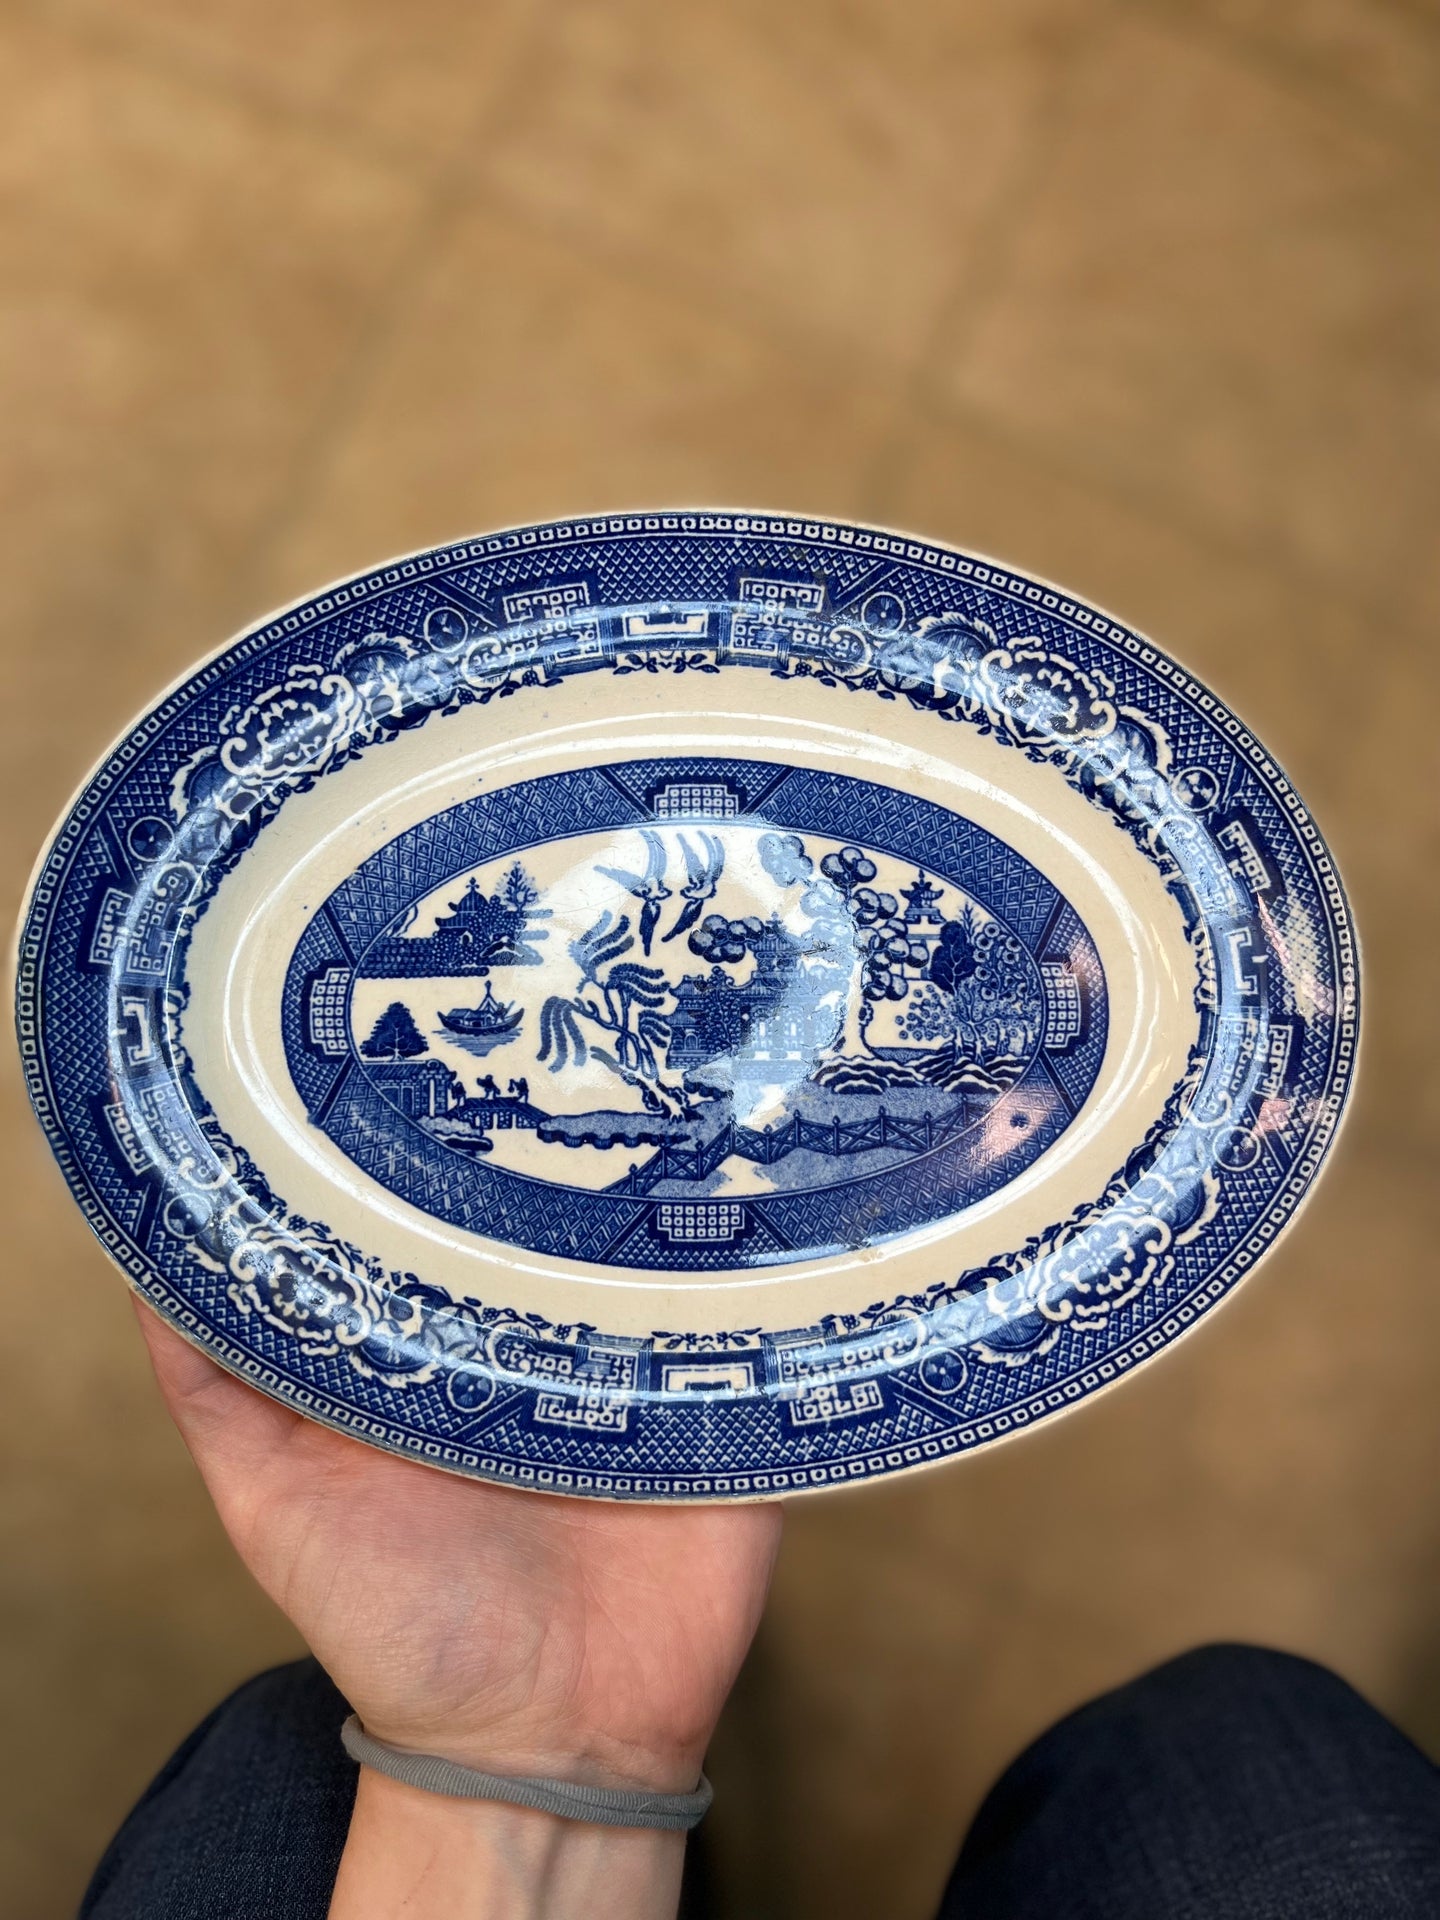 Vintage Blue Willow Serving Platter